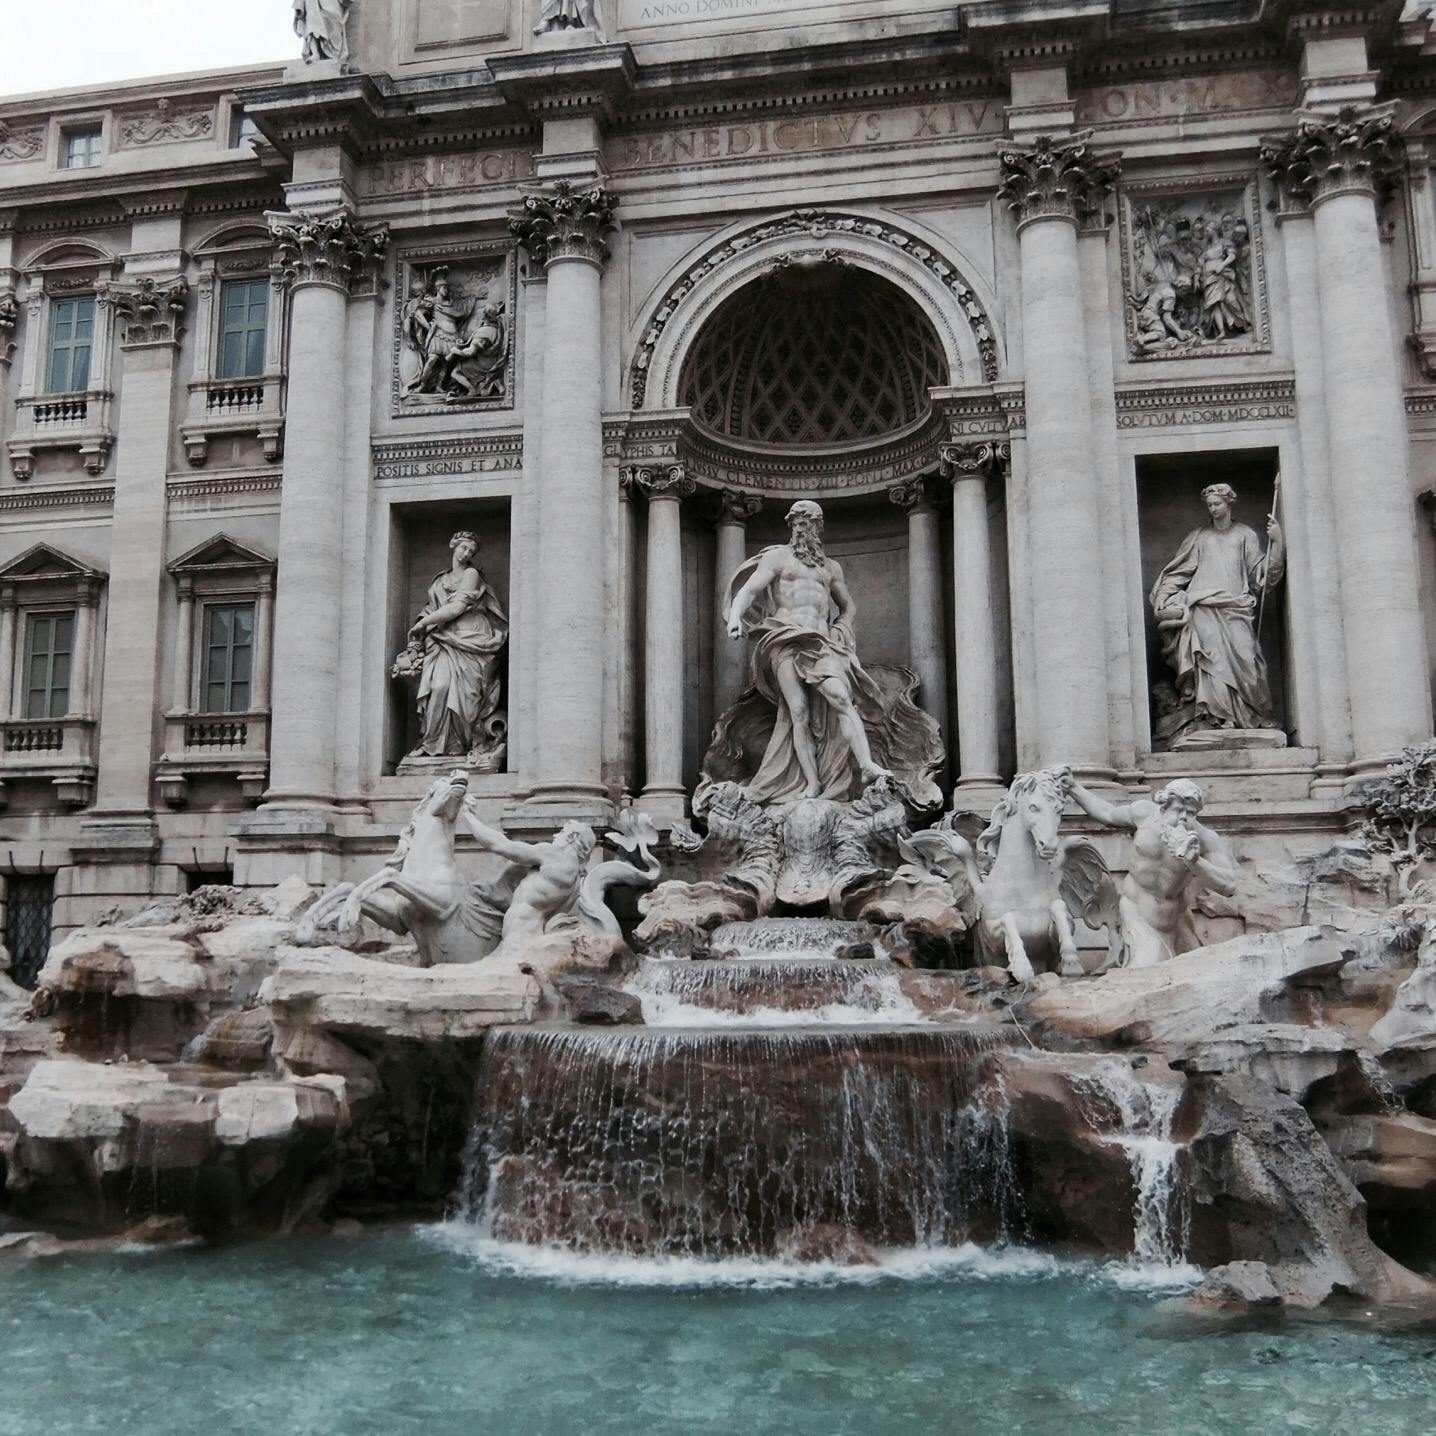 トレビの泉 Fontana Di Trevi の投稿写真 感想 みどころ 13 02 28 トレヴィの泉 イタリア ローマ トリップノート